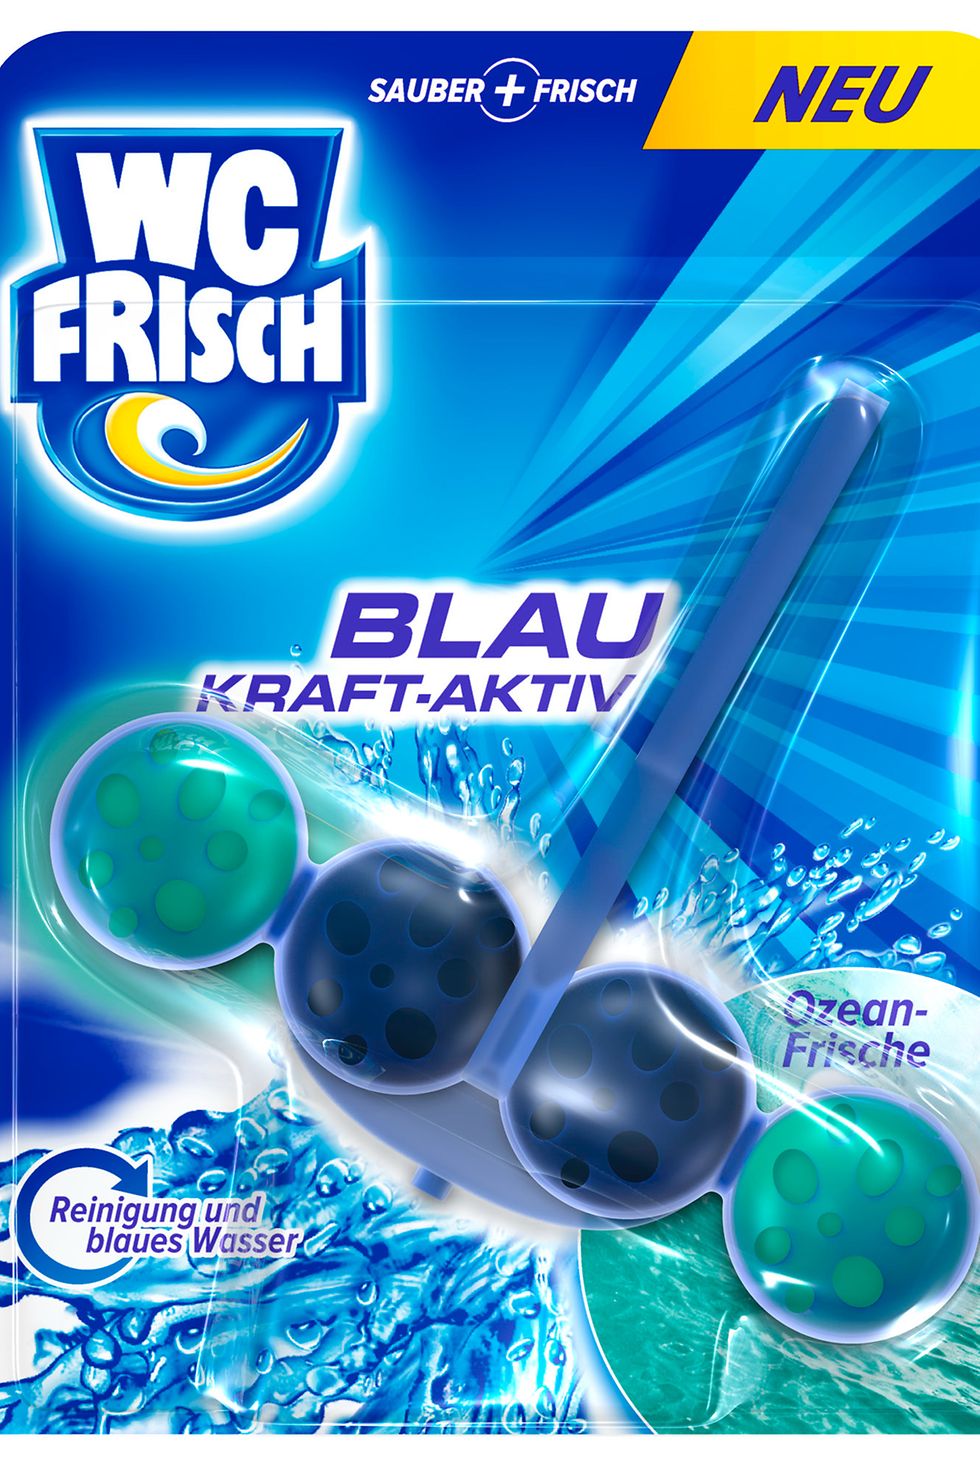 WC Frisch Blau Kraft-Aktiv Ozean